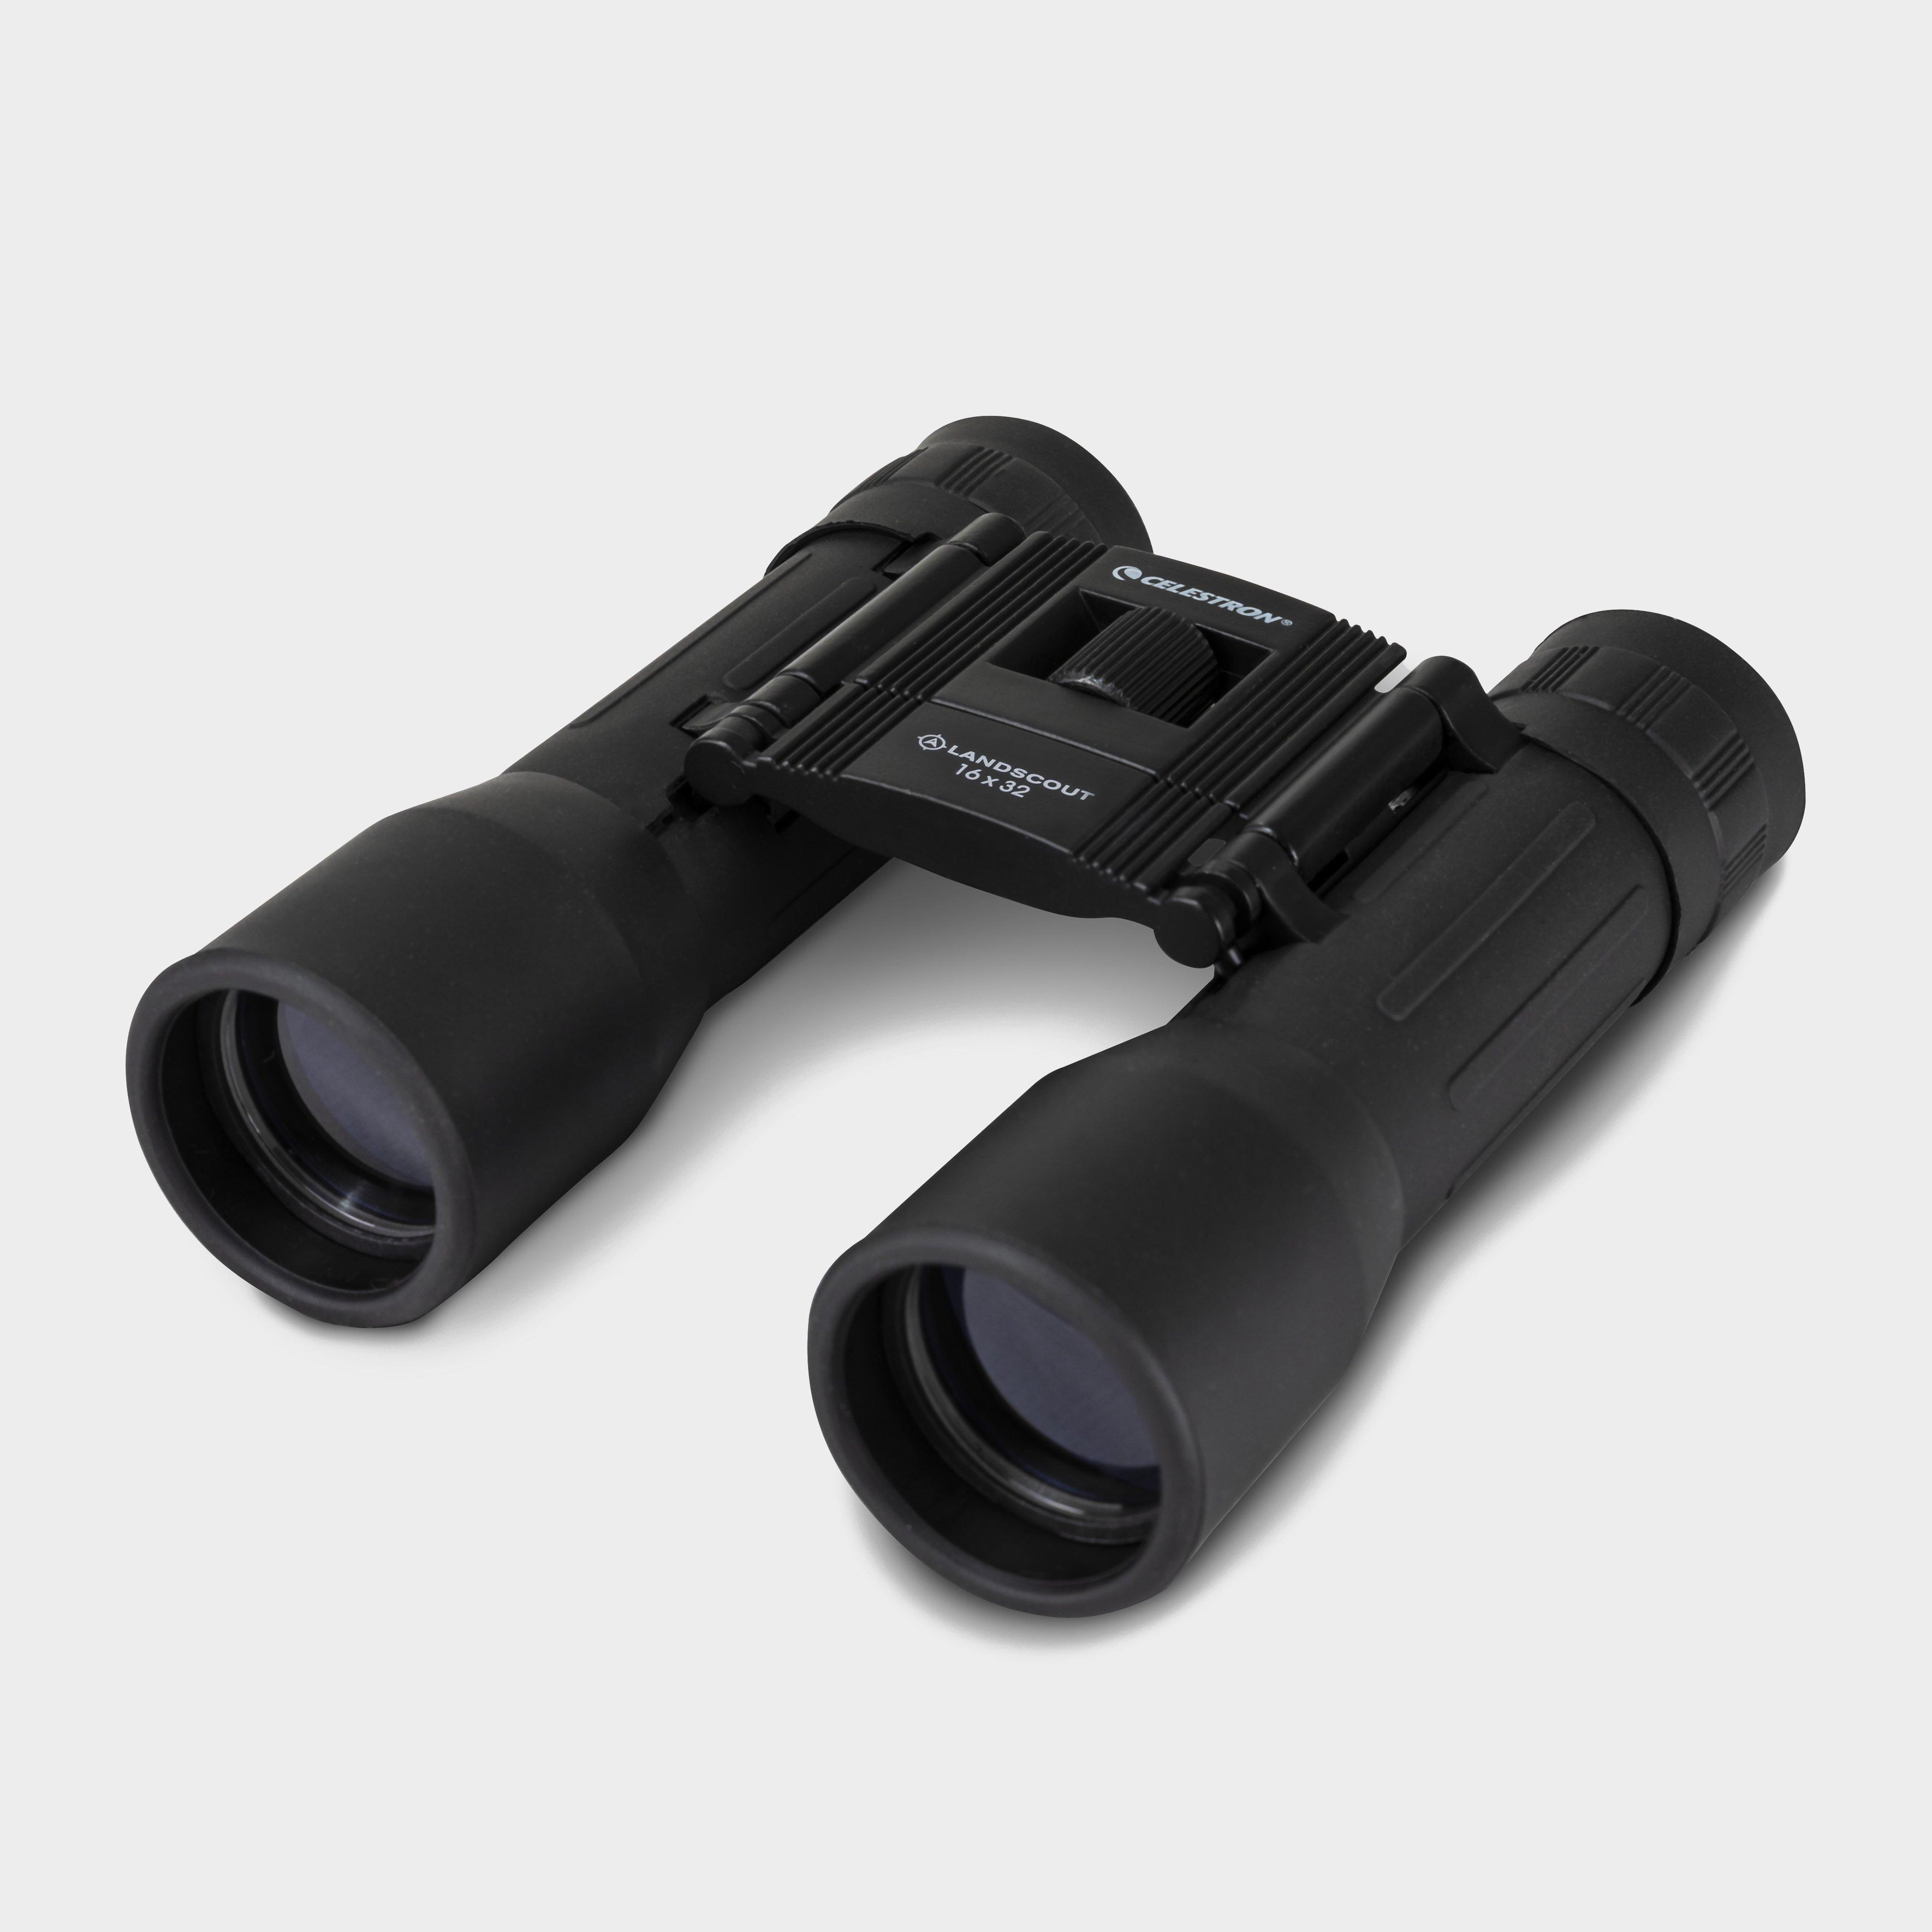 Celestron Landscout 16x32mm Roof Binoculars  Black